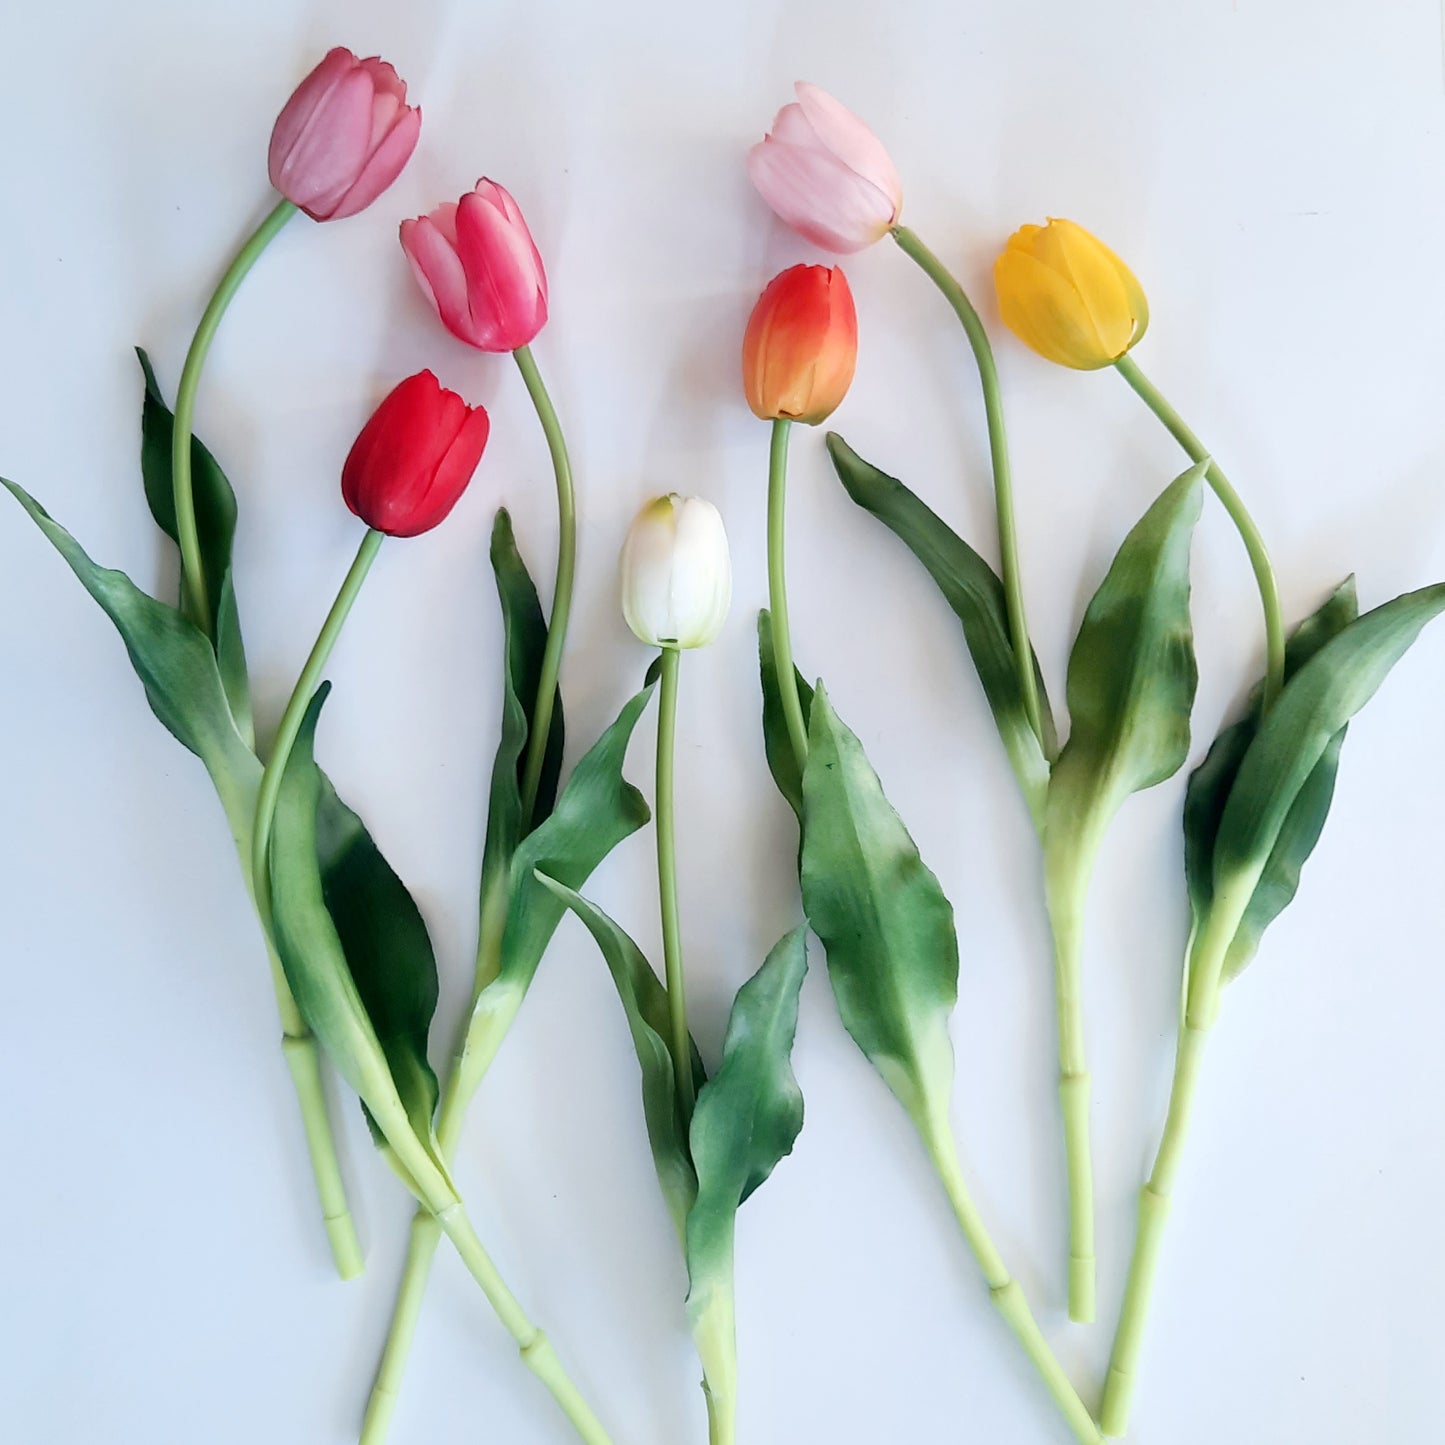 A legélethűbb mályva gumi tulipán művirág csokor